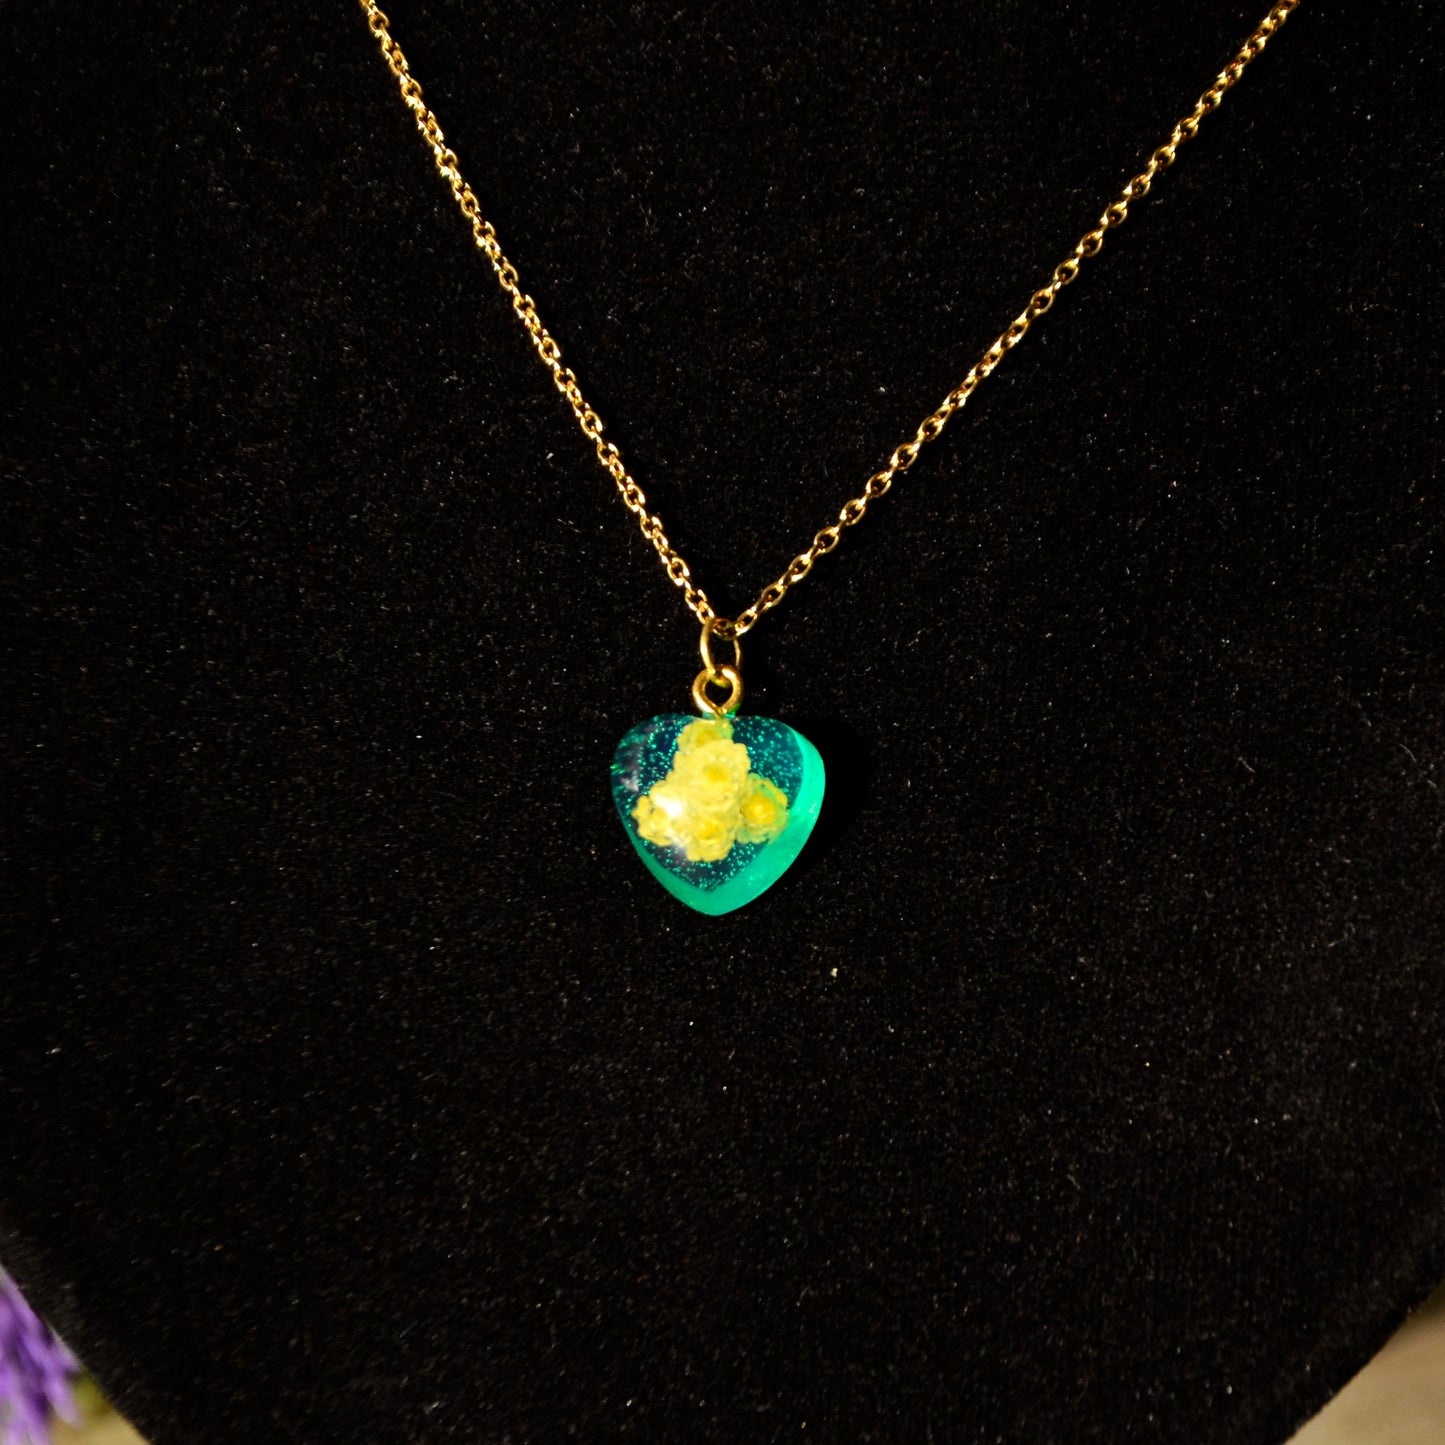 Naszyjnik małe serce z kocanką piaskową - kolor złoty, zielony